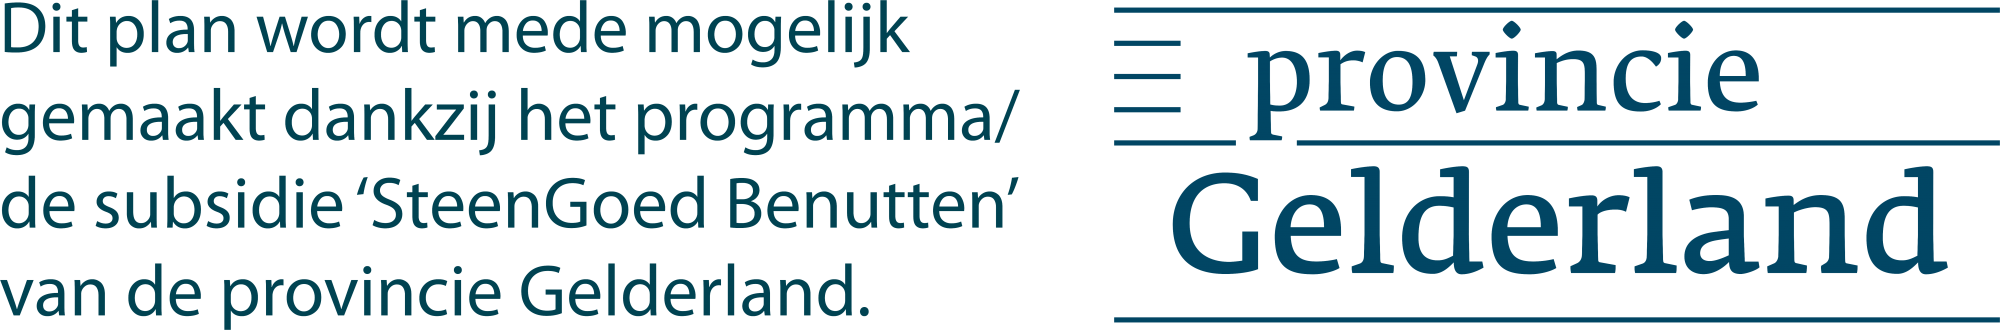 Sticker provincie Gelderland